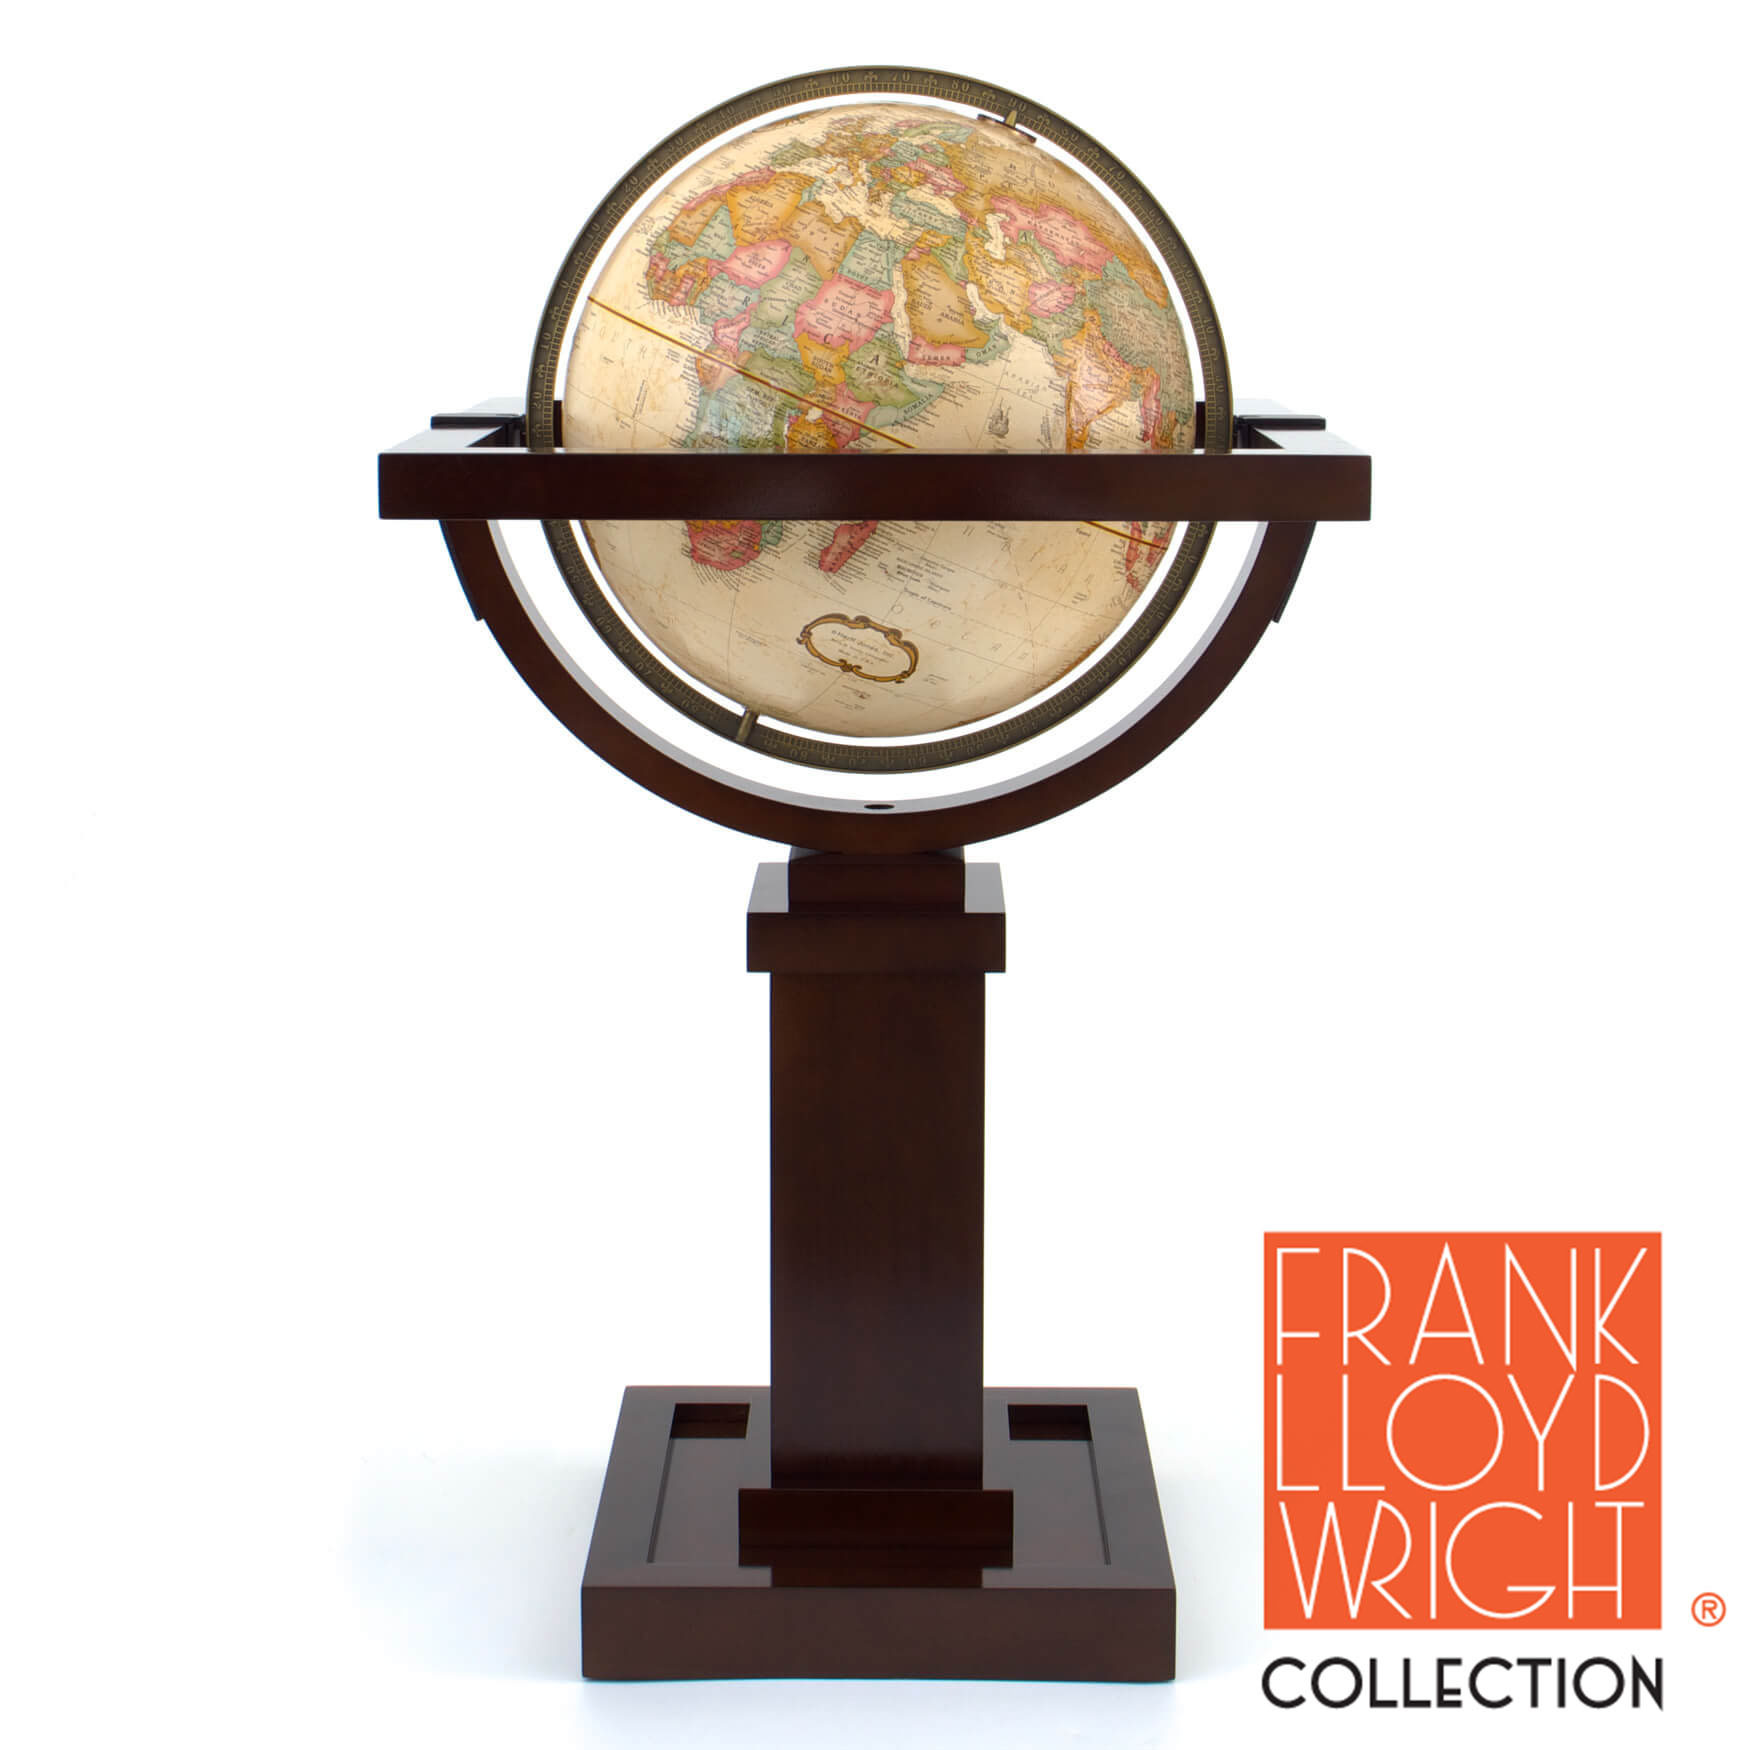 Wright Globe by Frank Lloyd Wright